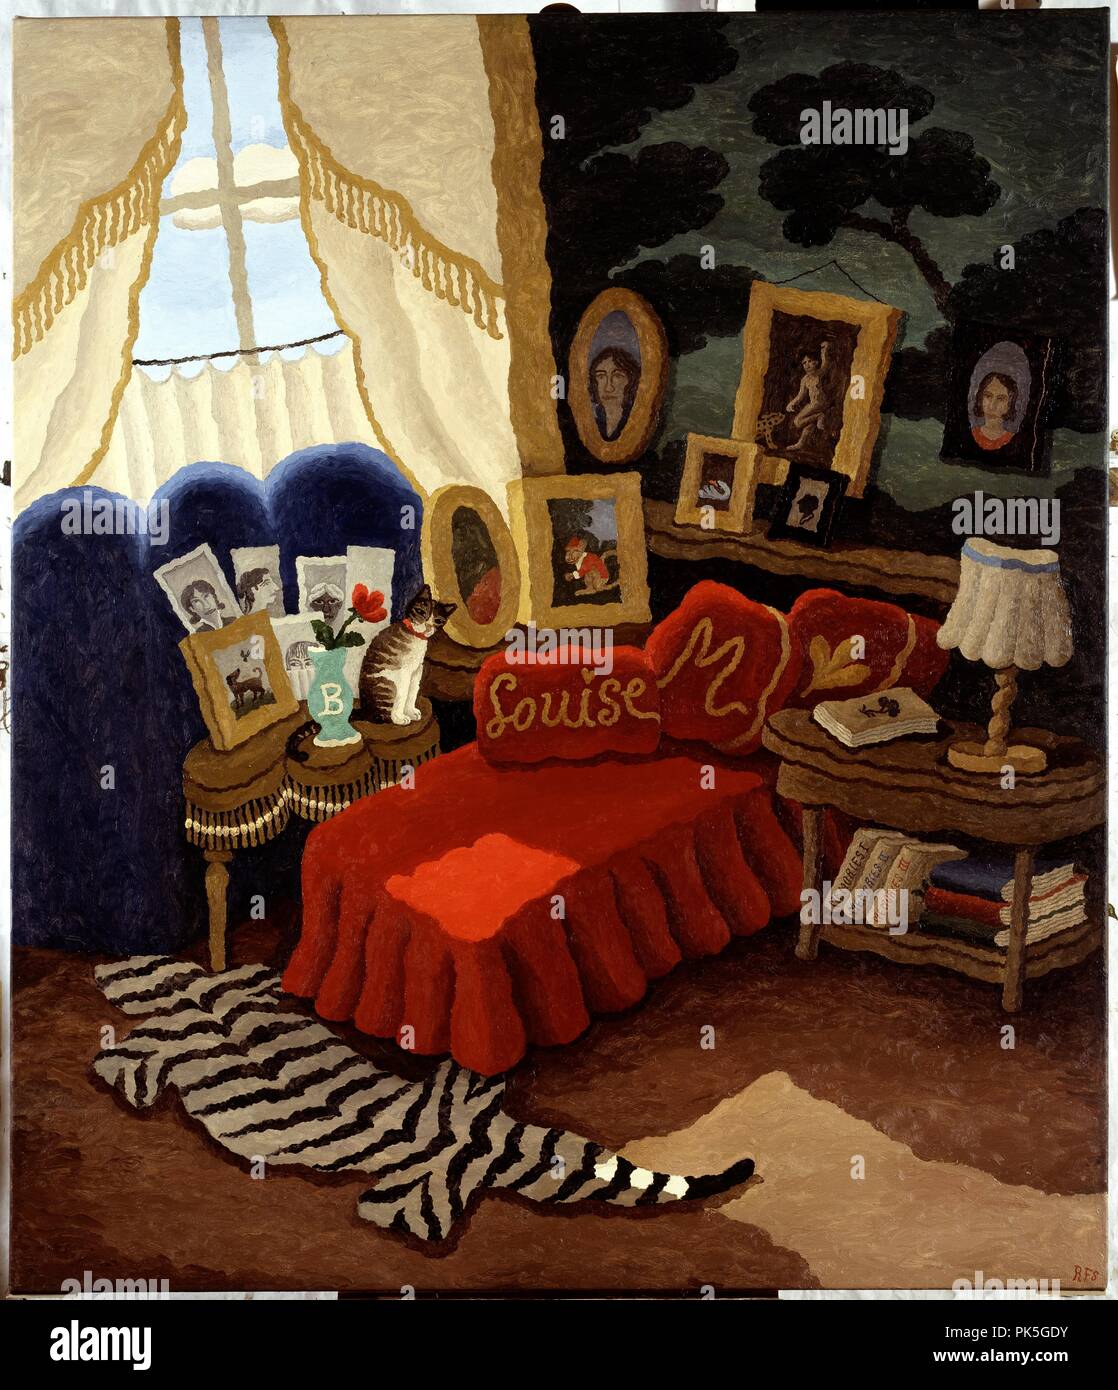 Ramiro Fernández Saus / 'La chambre de Louise' (Louise's room), 2006, Painting (oil on canvas), 177 x150 cm. Stock Photo